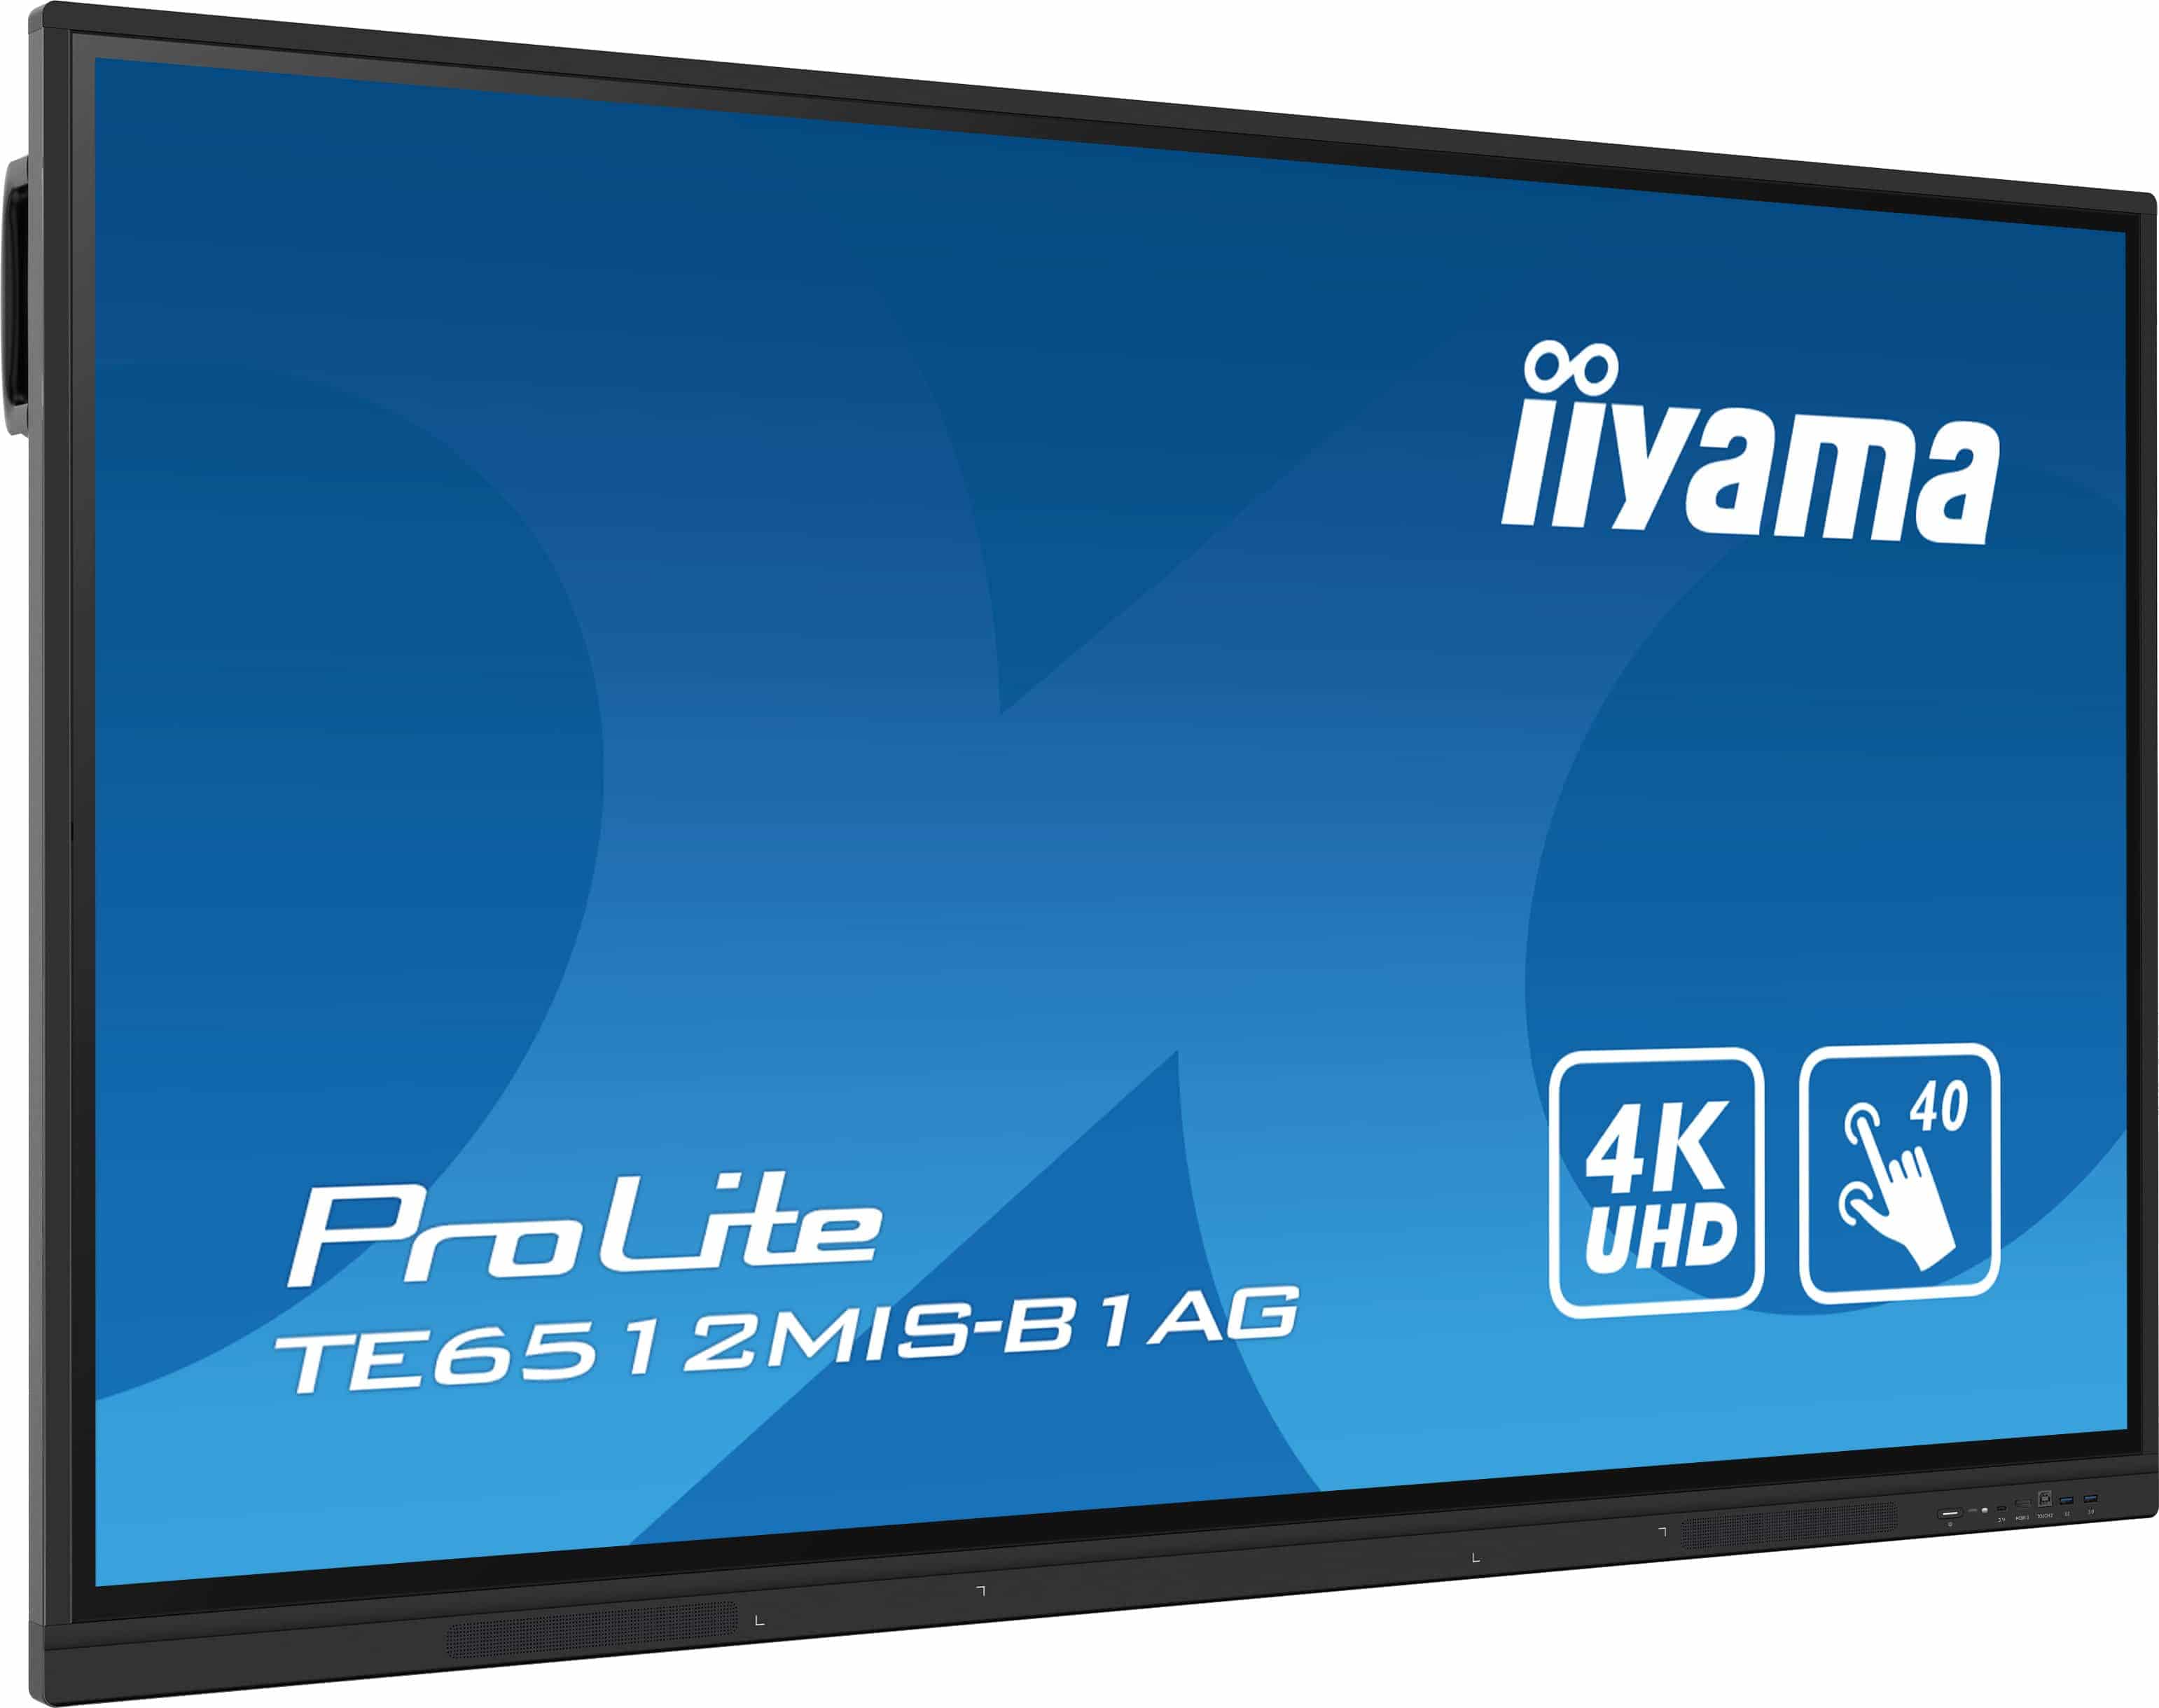 Iiyama ProLite TE6512MIS-B1AG | Interaktives 65" LCD Touchscreen-Display mit 4K-Auflösung, integrierter Whiteboard-Software und Benutzerprofilen